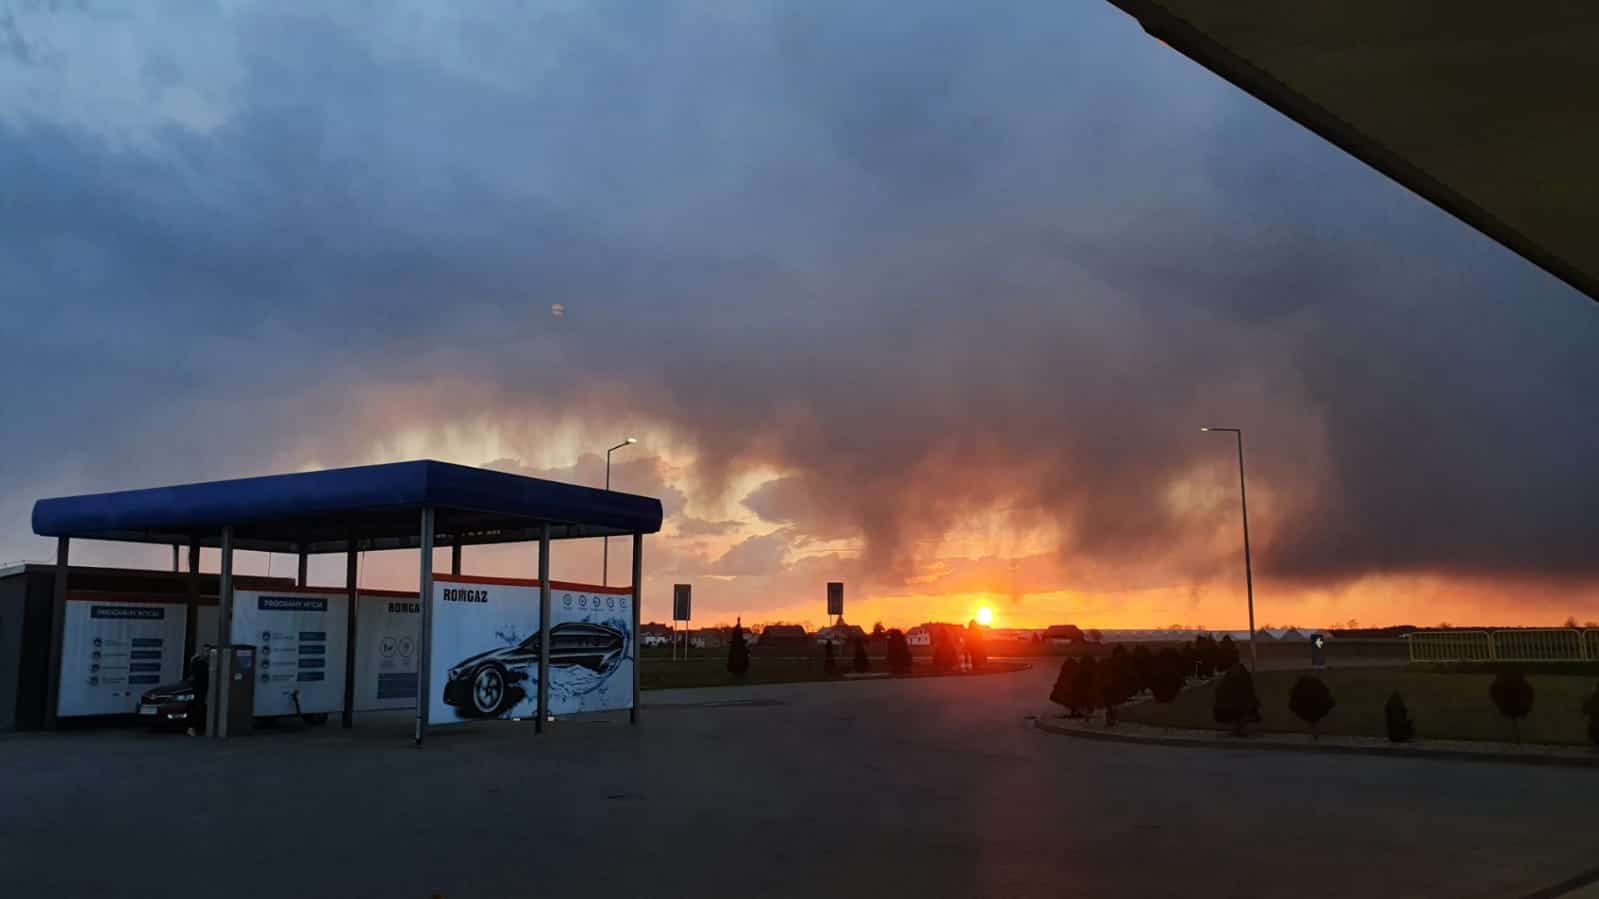 Stacja benzynowa pod ciemnym, pochmurnym niebem o zachodzie słońca. Słońce jest już blisko horyzontu, rzucając pomarańczowy blask. Stacja benzynowa ma niebieski baldachim z widocznymi pojazdami i oznakowaniem.